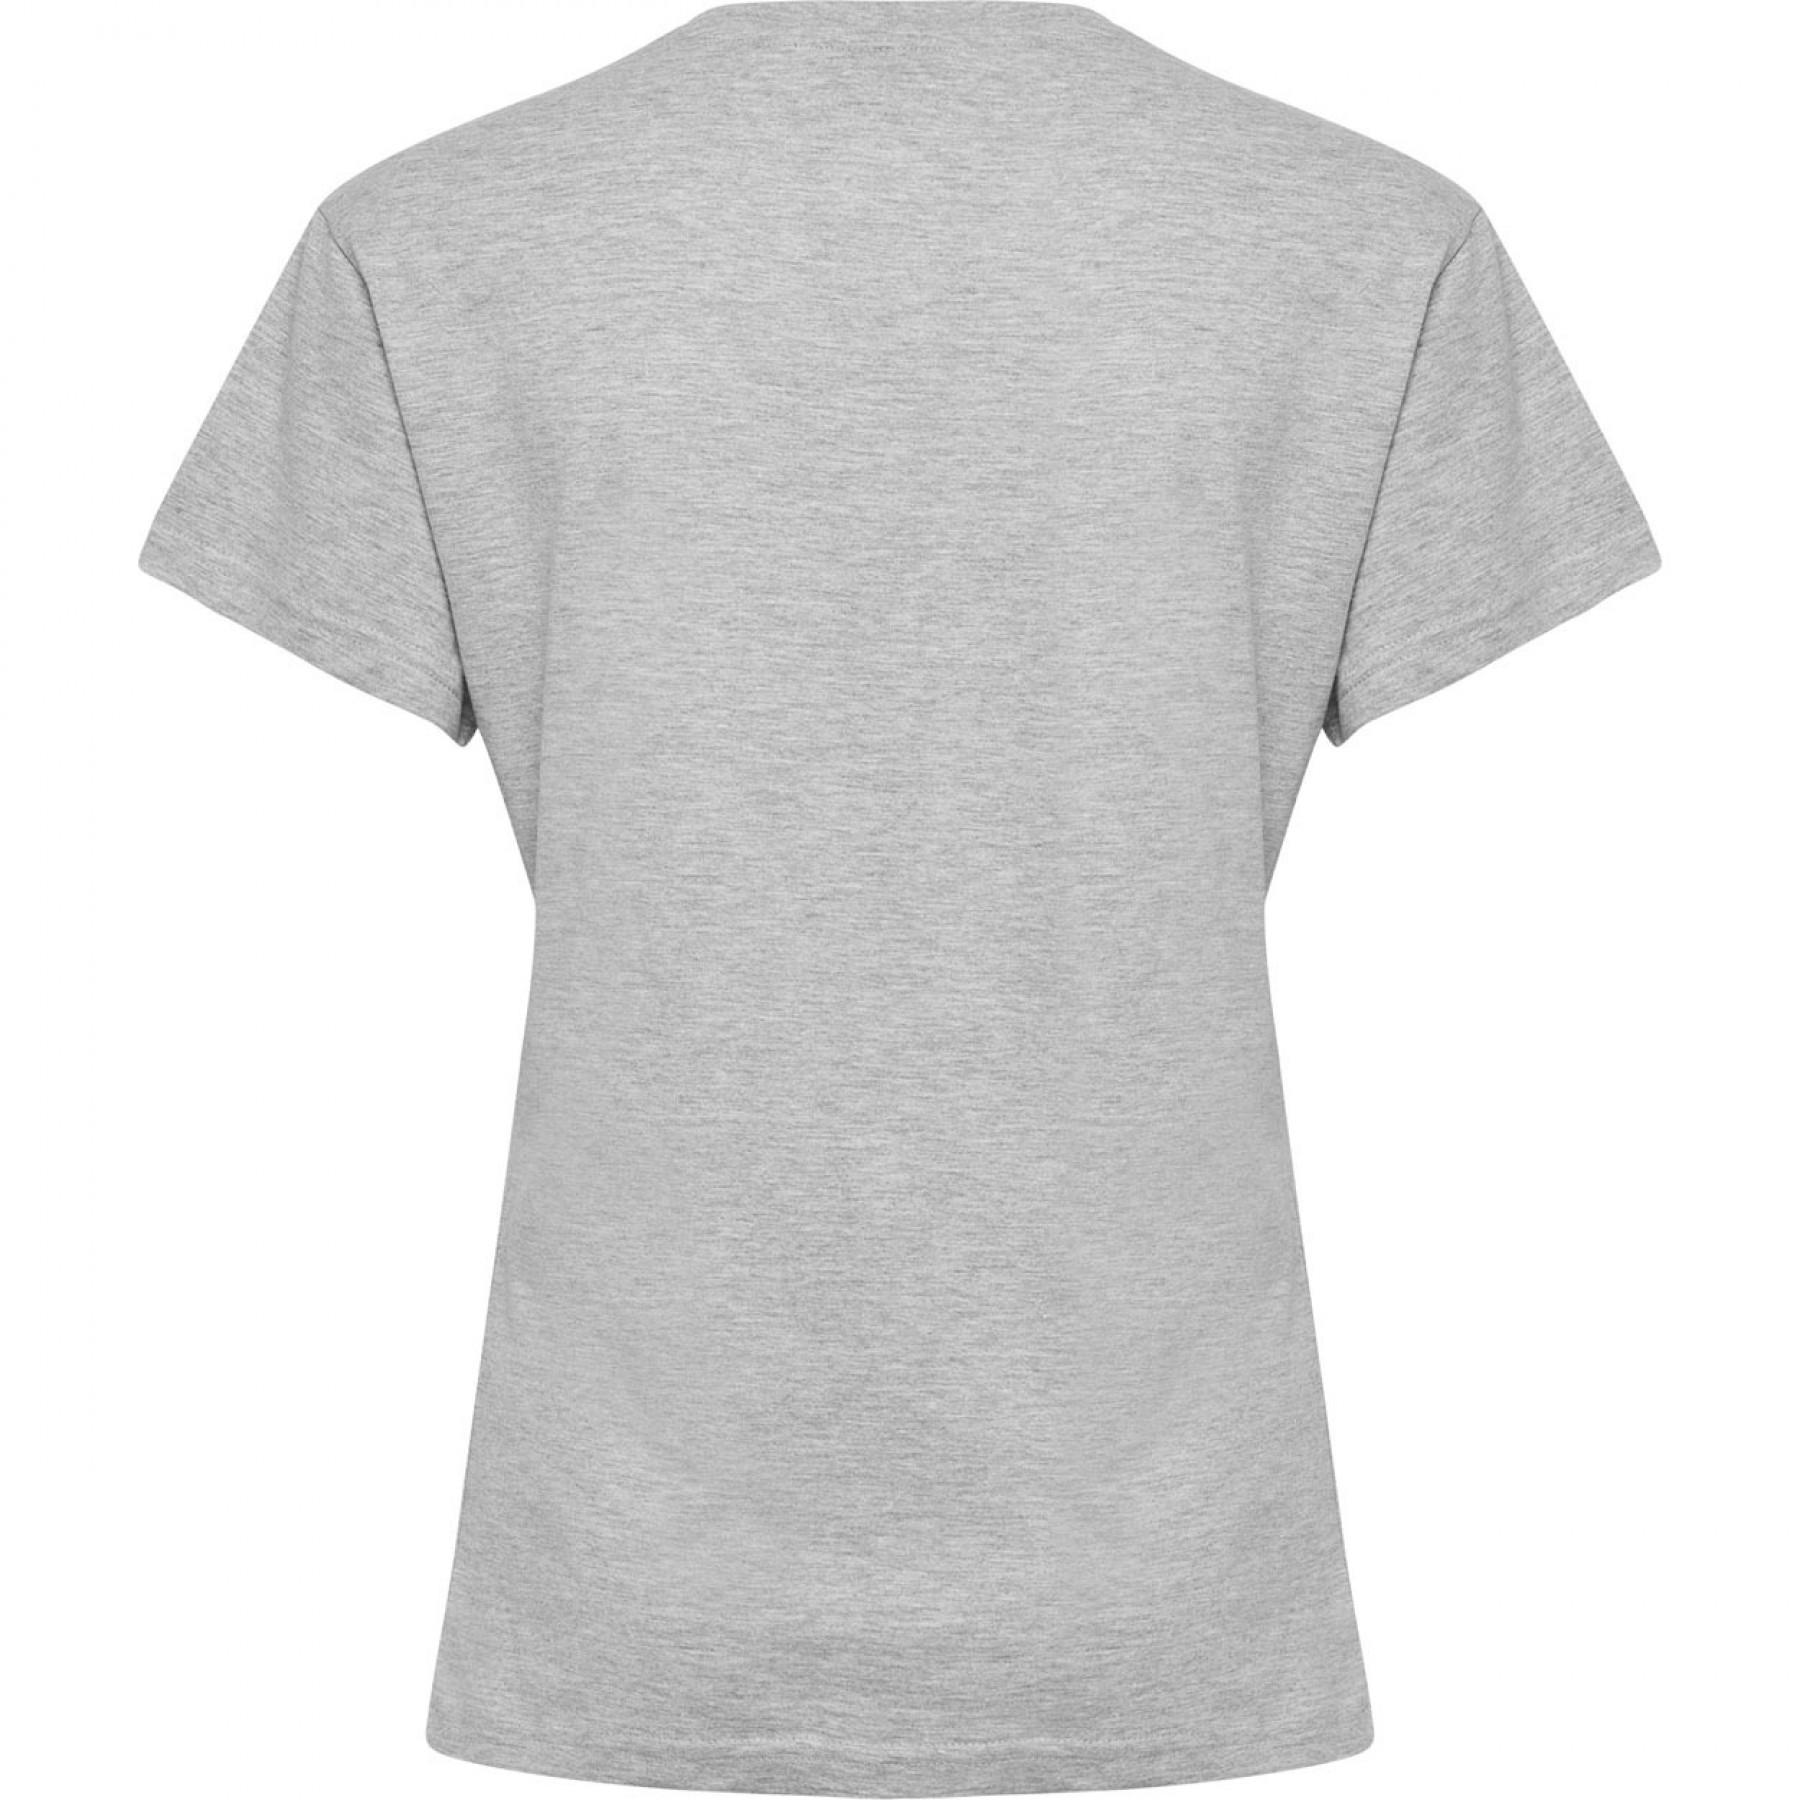 T-shirt mulher Hummel Cotton Logo